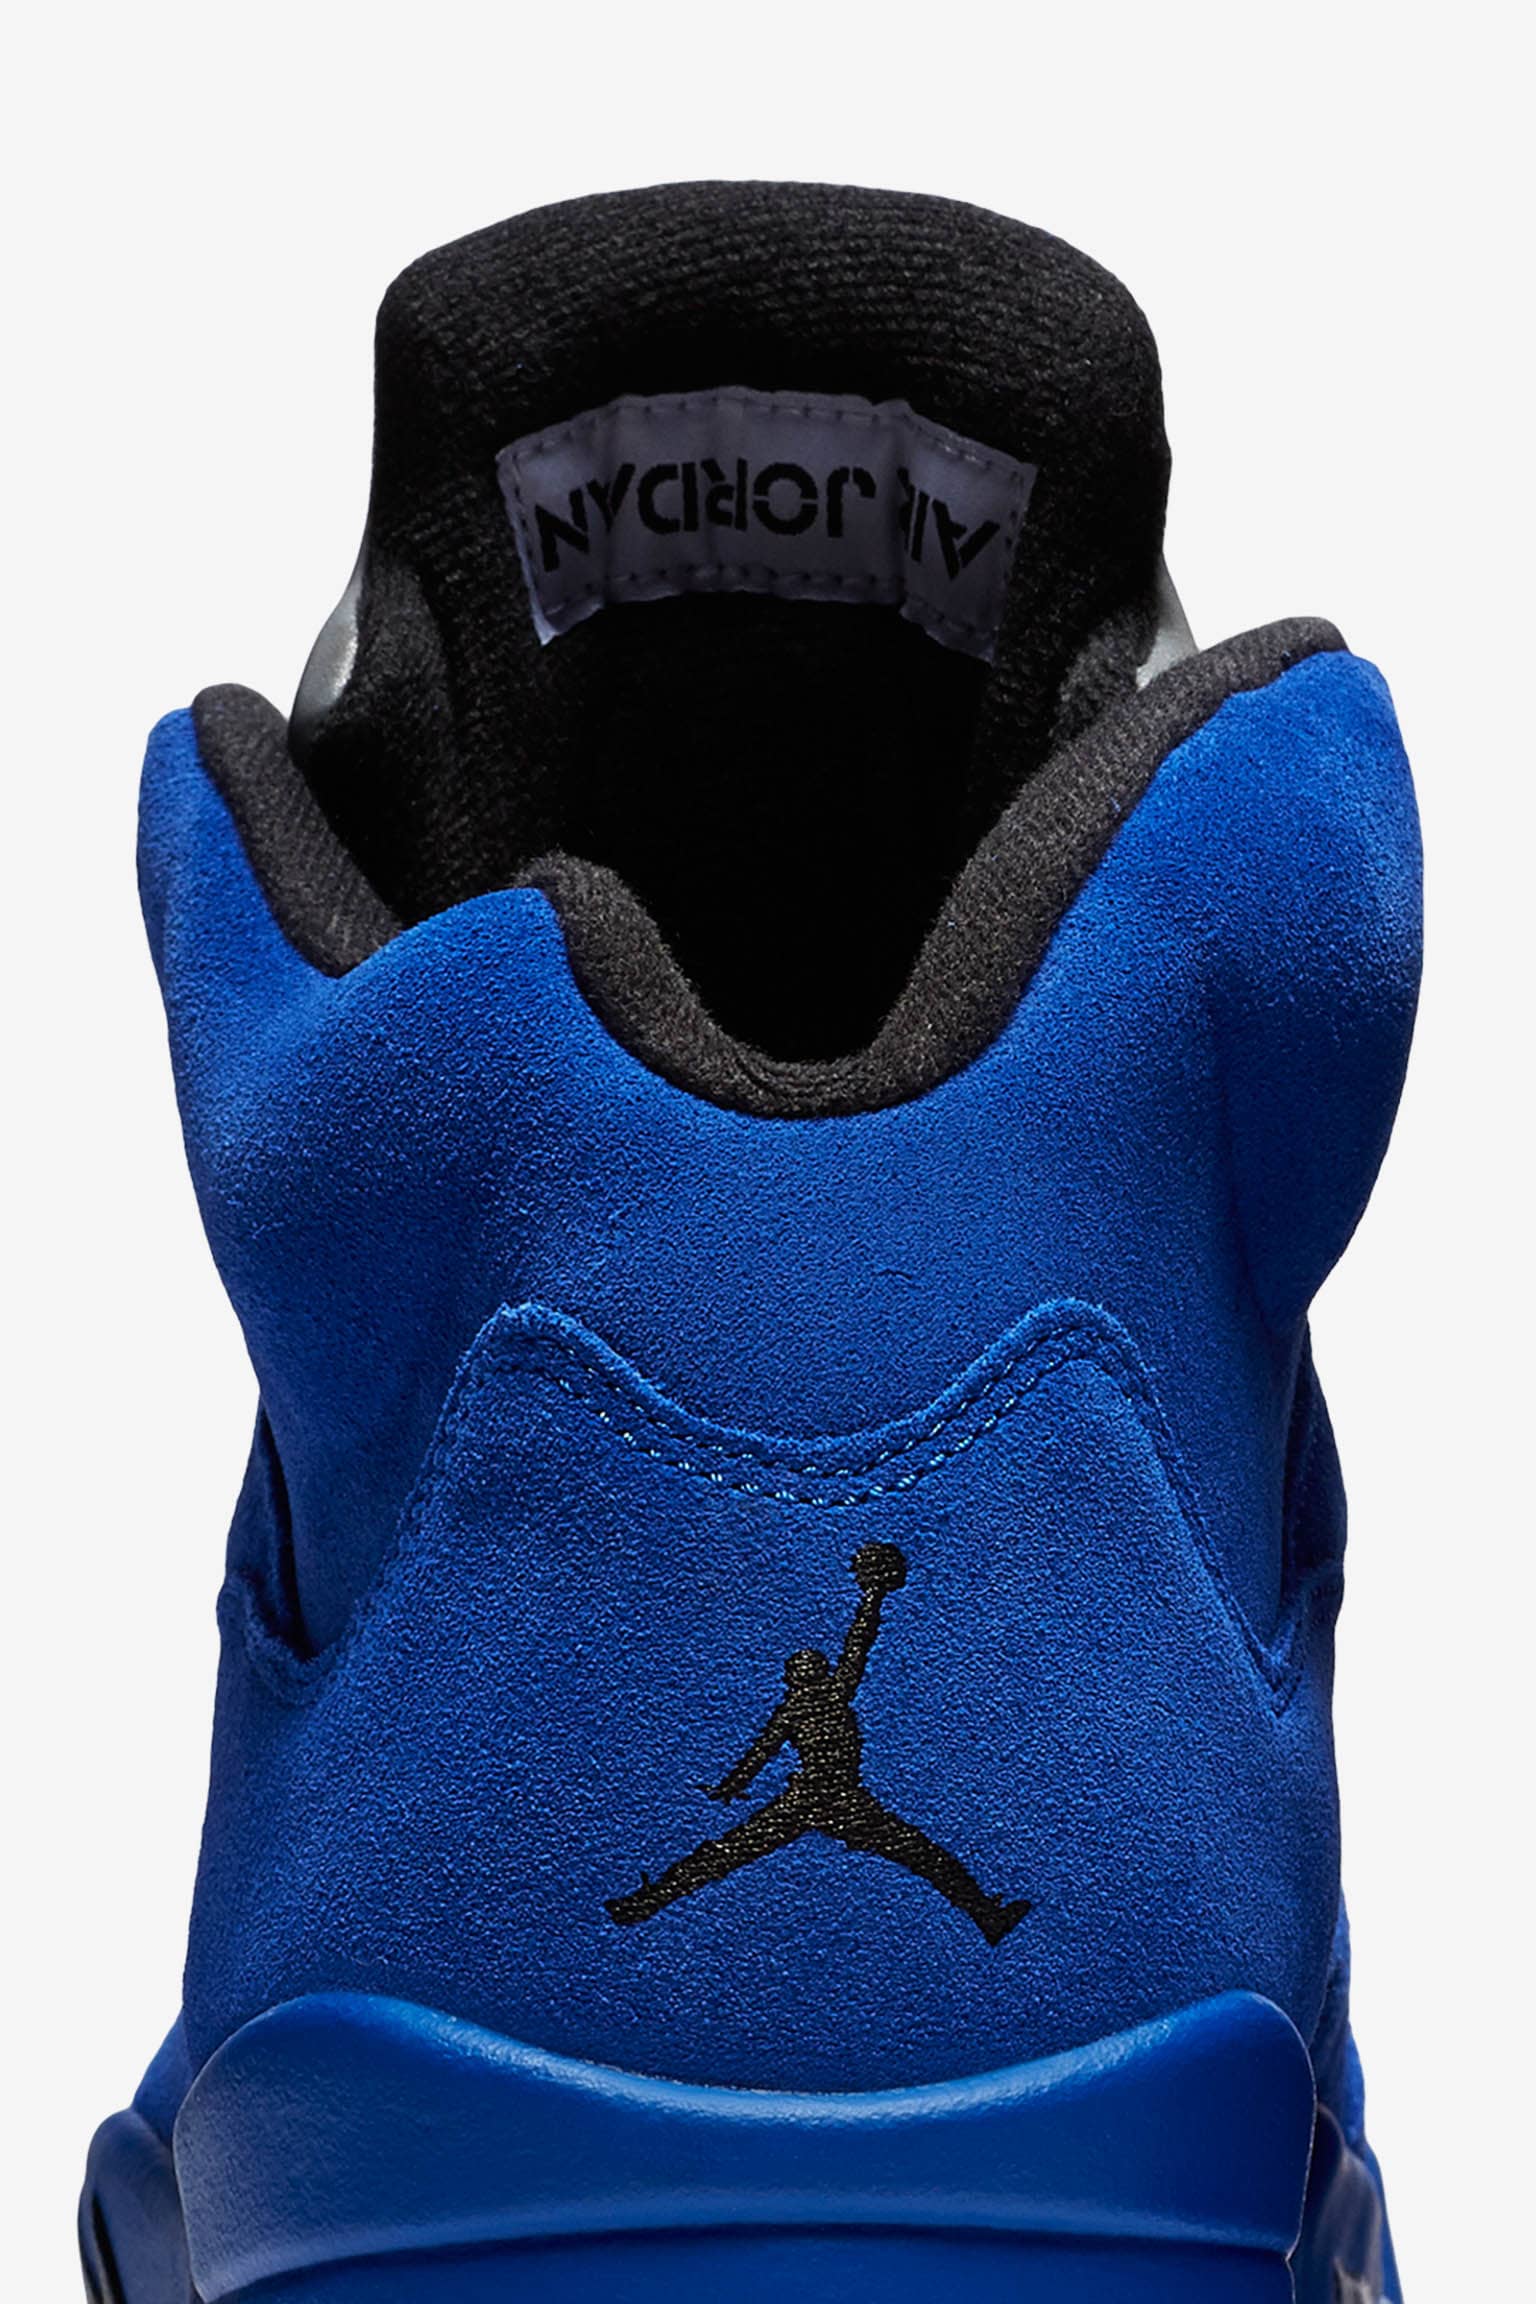 Air Jordan 5 Retro Flight Suit Game Royal Black Release Date Nike Snkrs